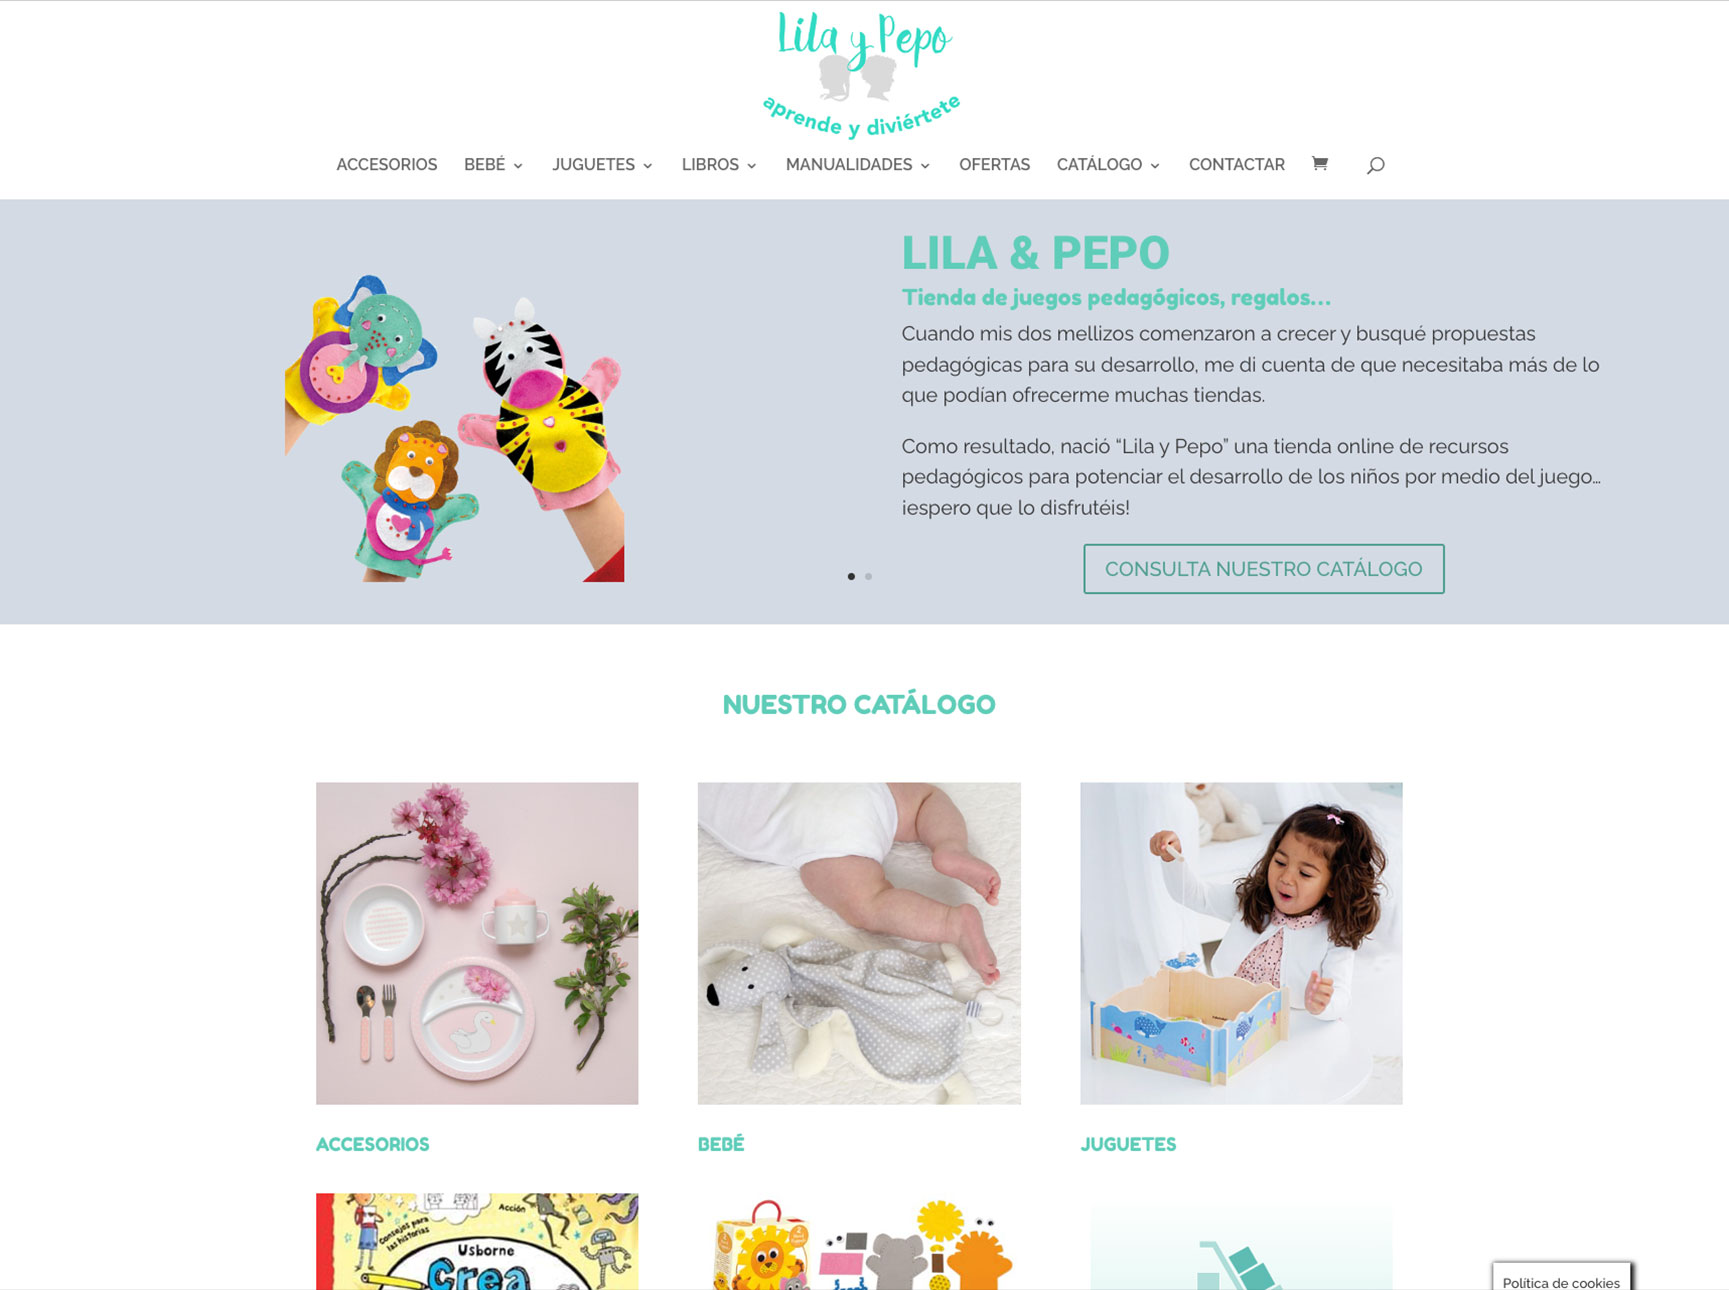 Diseño de web y comercio electrónico en WordPress de la empresa Lila & Pepo de Jaca, con pago con tarjeta y envío. Ver https://www.lilaypepo.com/